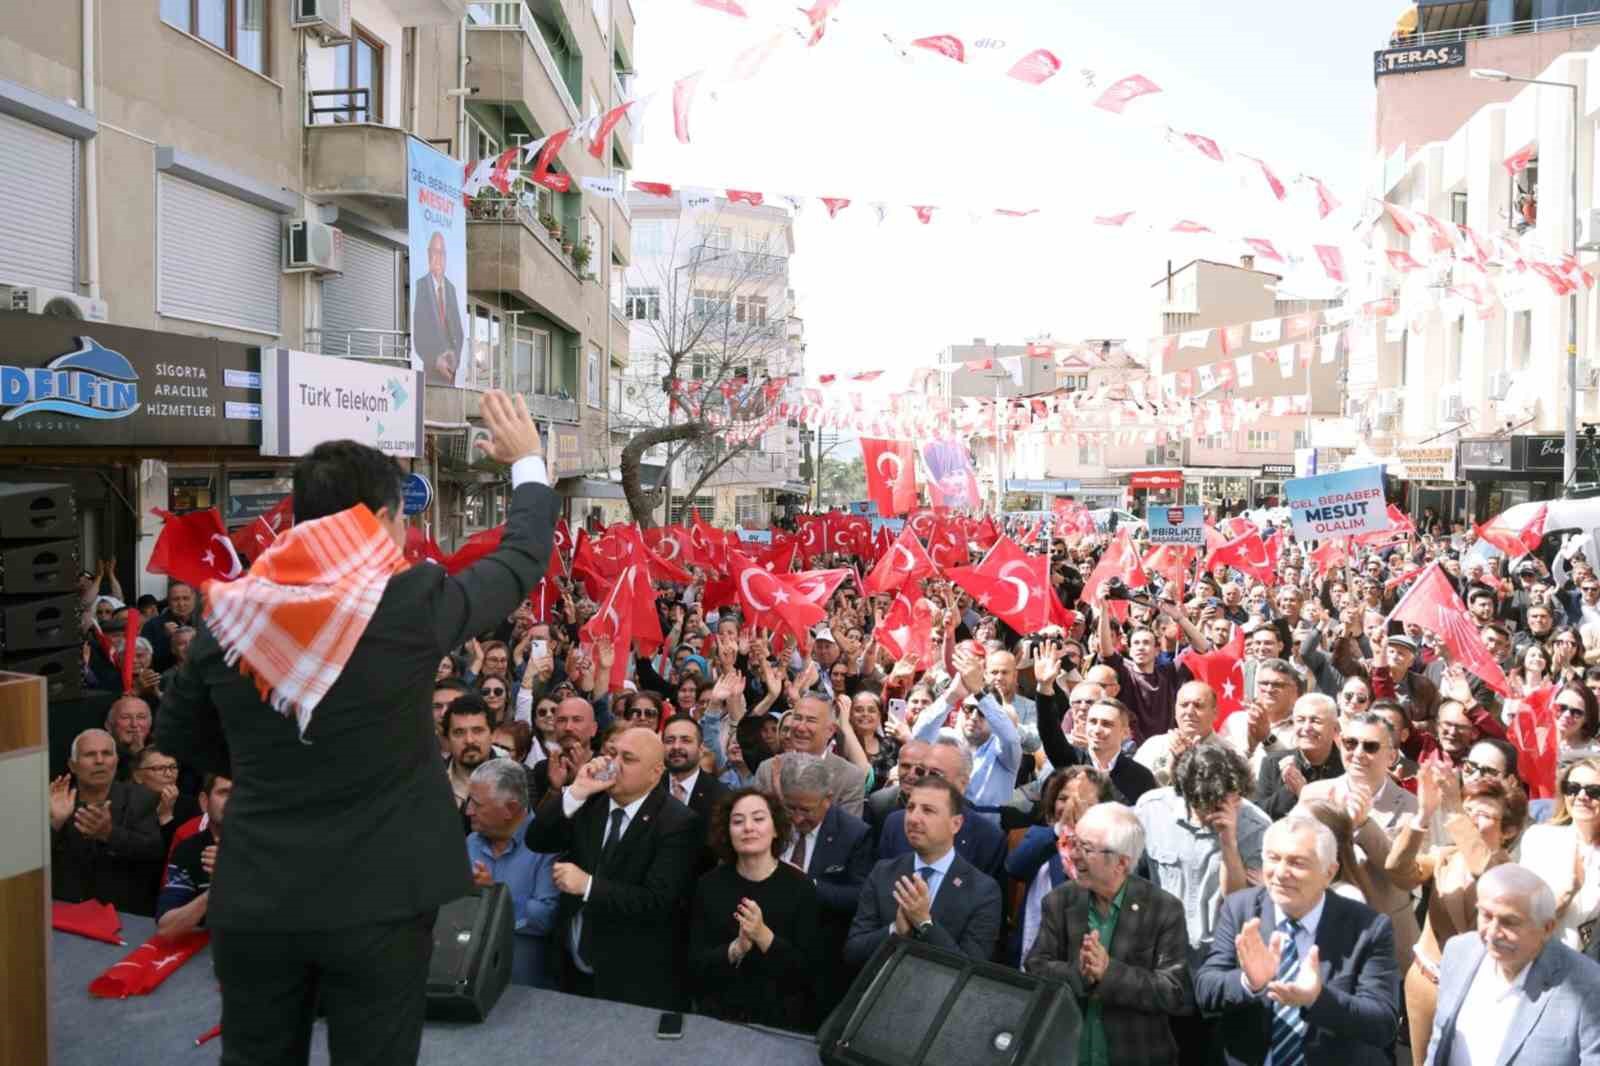 CHP Muğla Büyükşehir adayı Aras: "Yoksulun üzerinden siyaset yaptırmayacağım"
